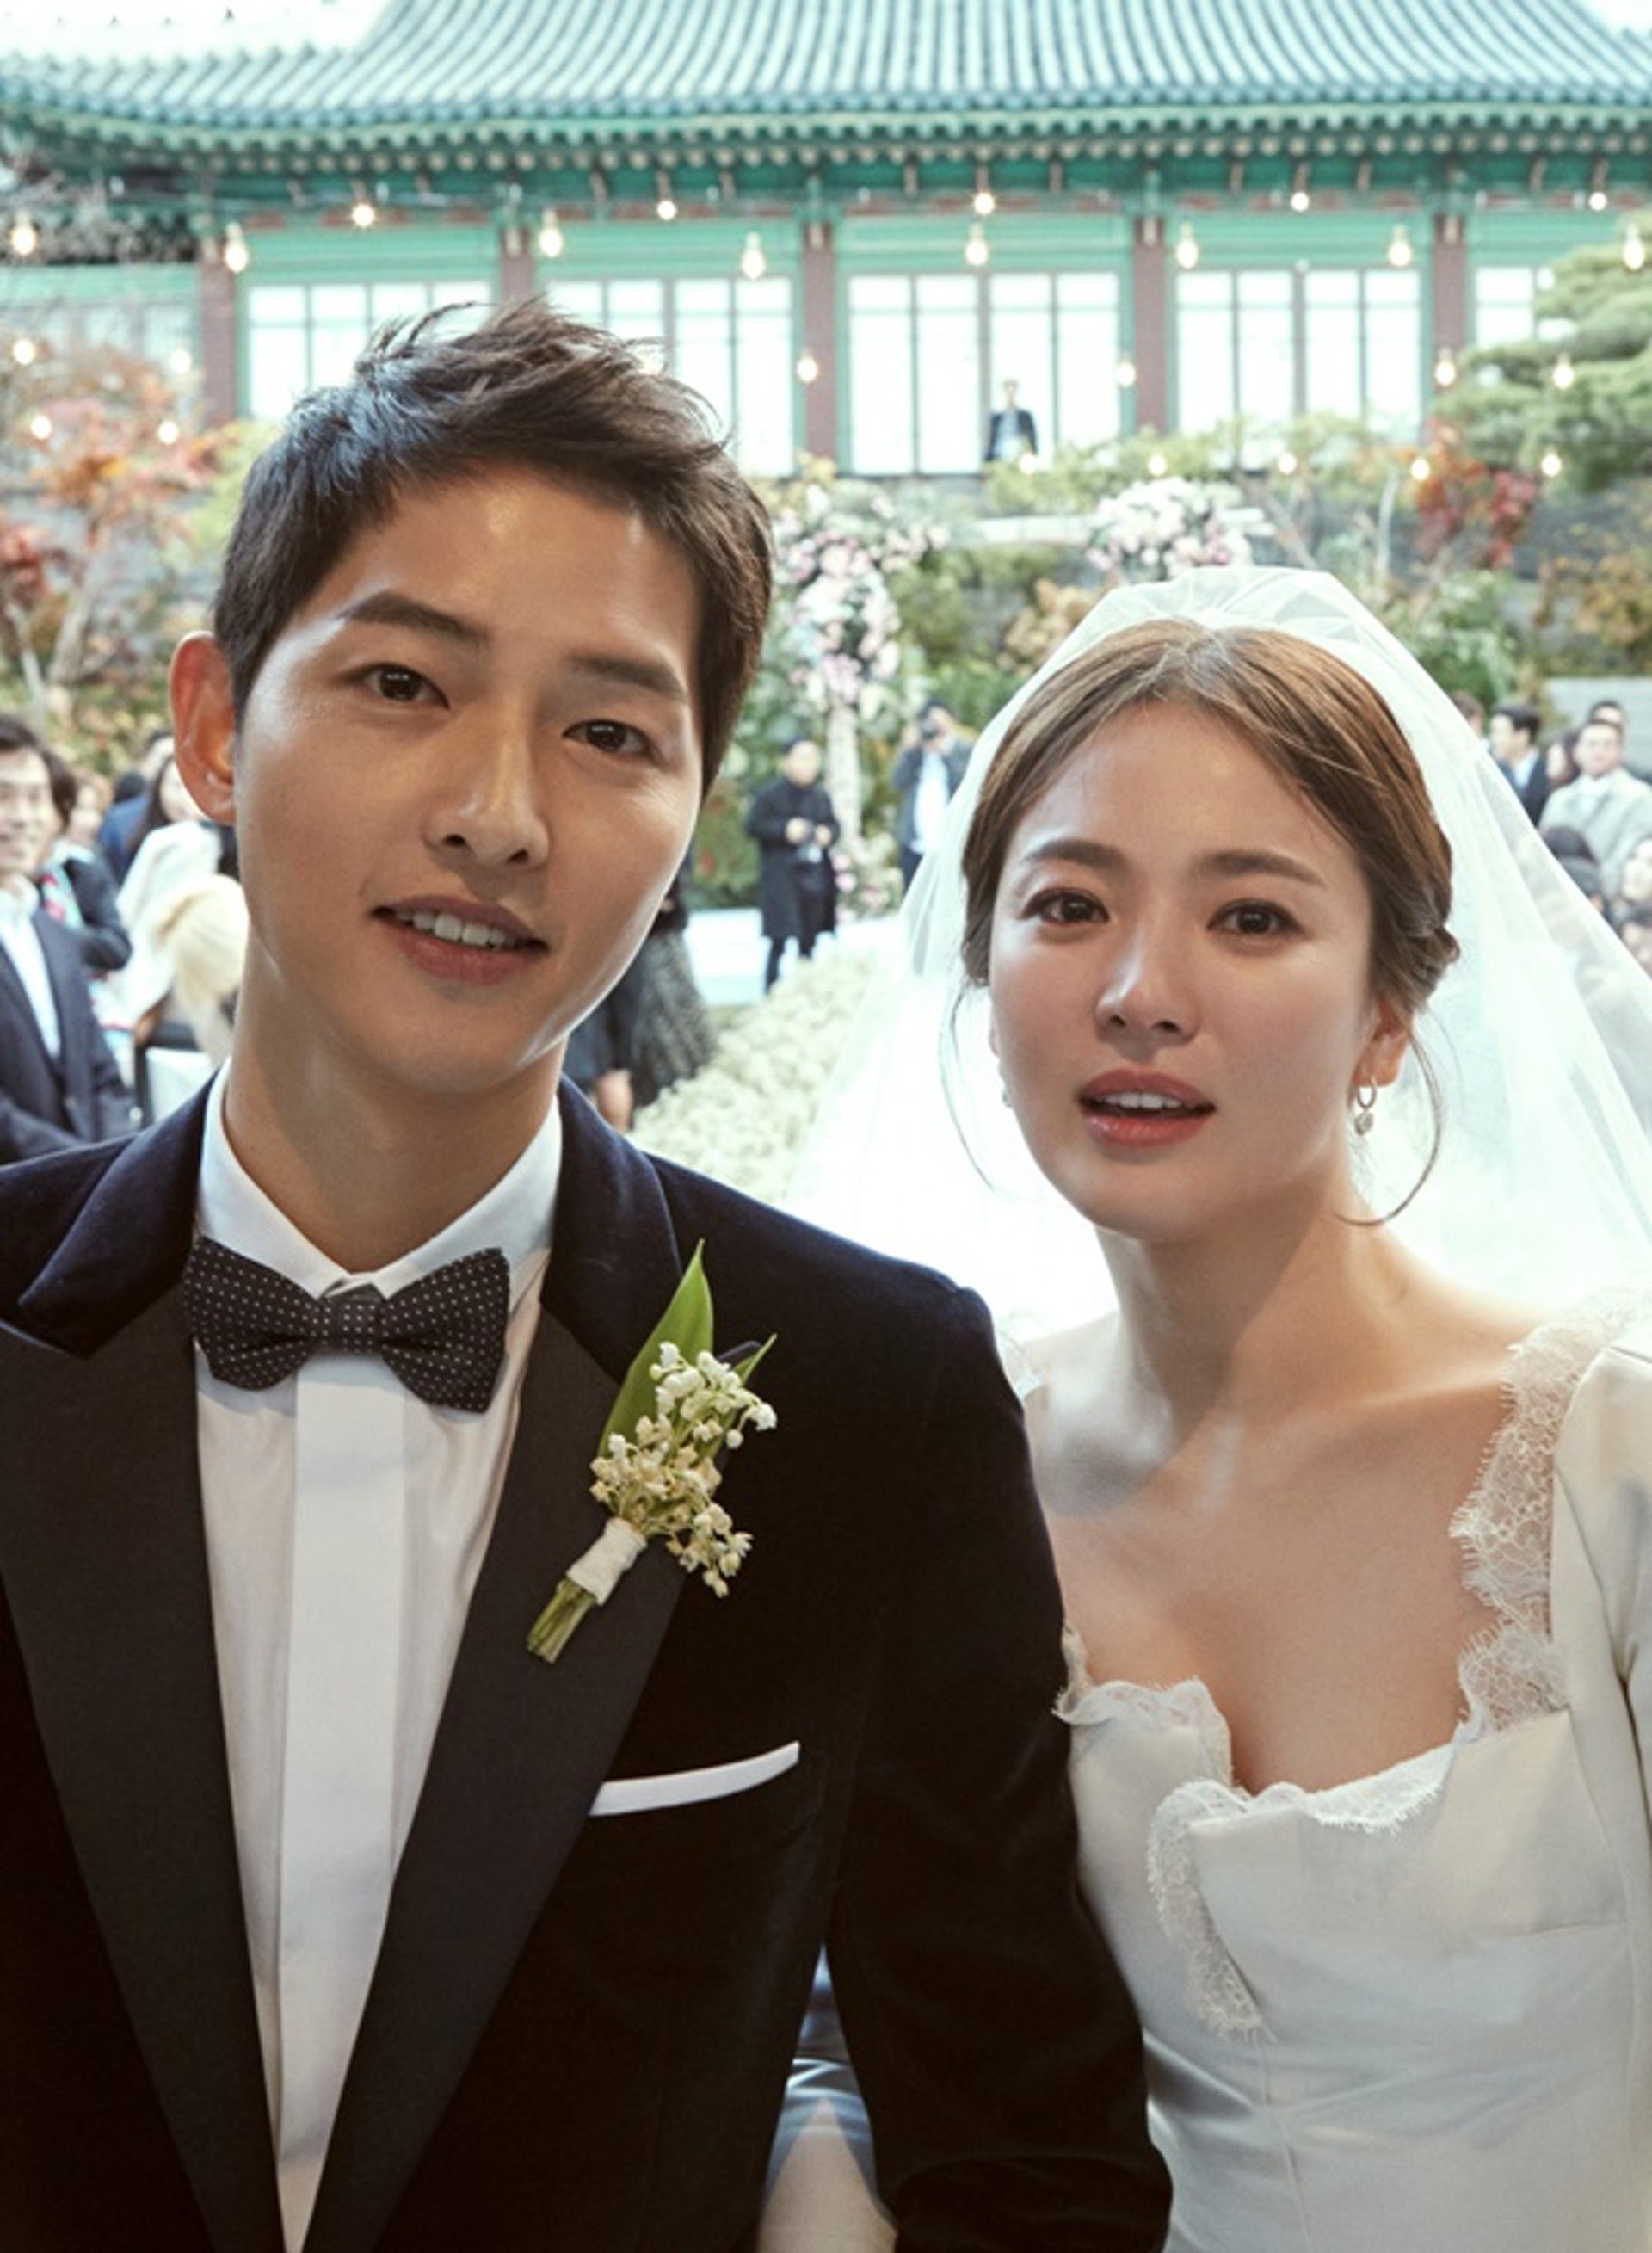 Đám cưới của cô và chồng cũ Song Joong Ki được coi là 'đám cưới thế kỷ' của Hàn Quốc dù hôn nhân của 2 người chỉ kéo dài vỏn vẹn trong 2 năm.